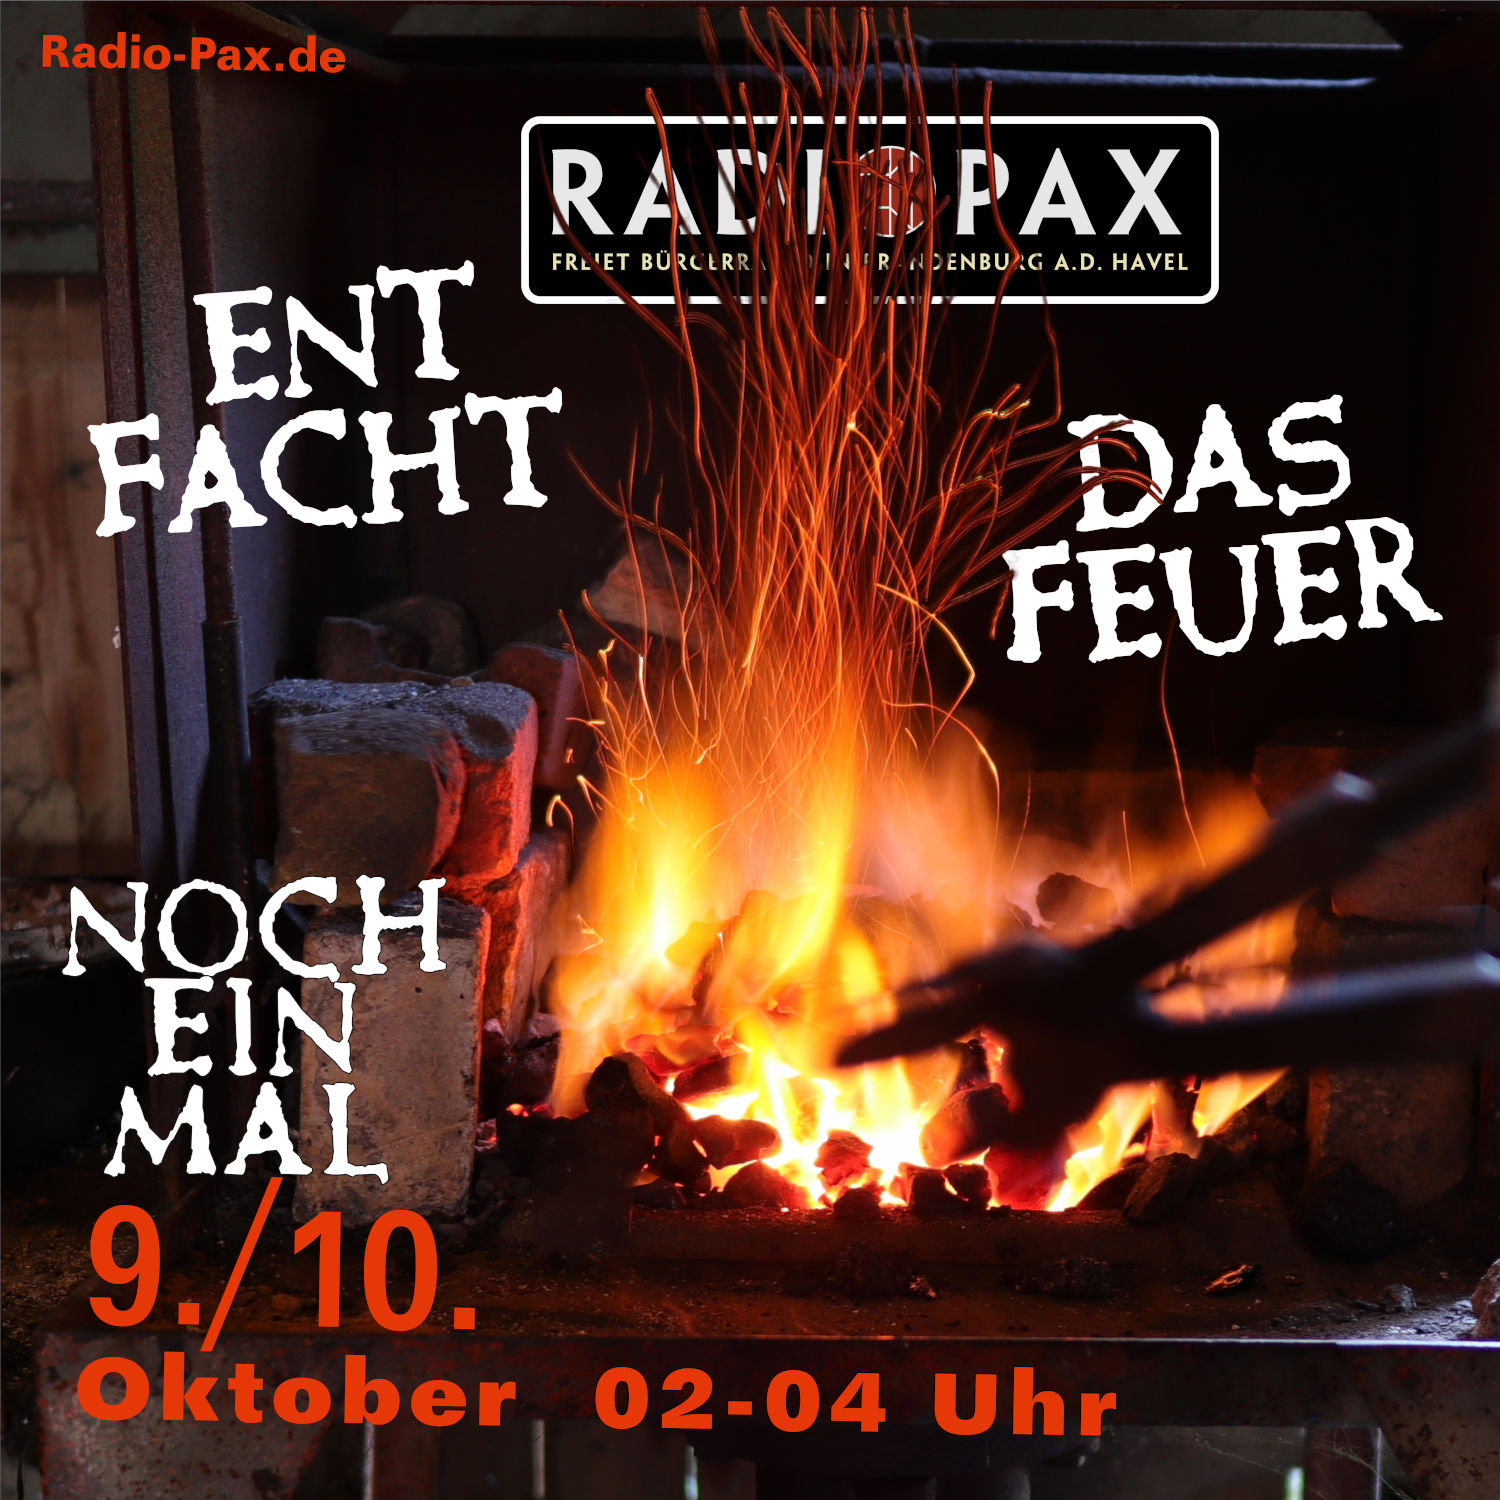 RADIO PAX (Whg. der Septembersendung) in der Nacht zum 10. Oktober von 2 bis 4 Uhr